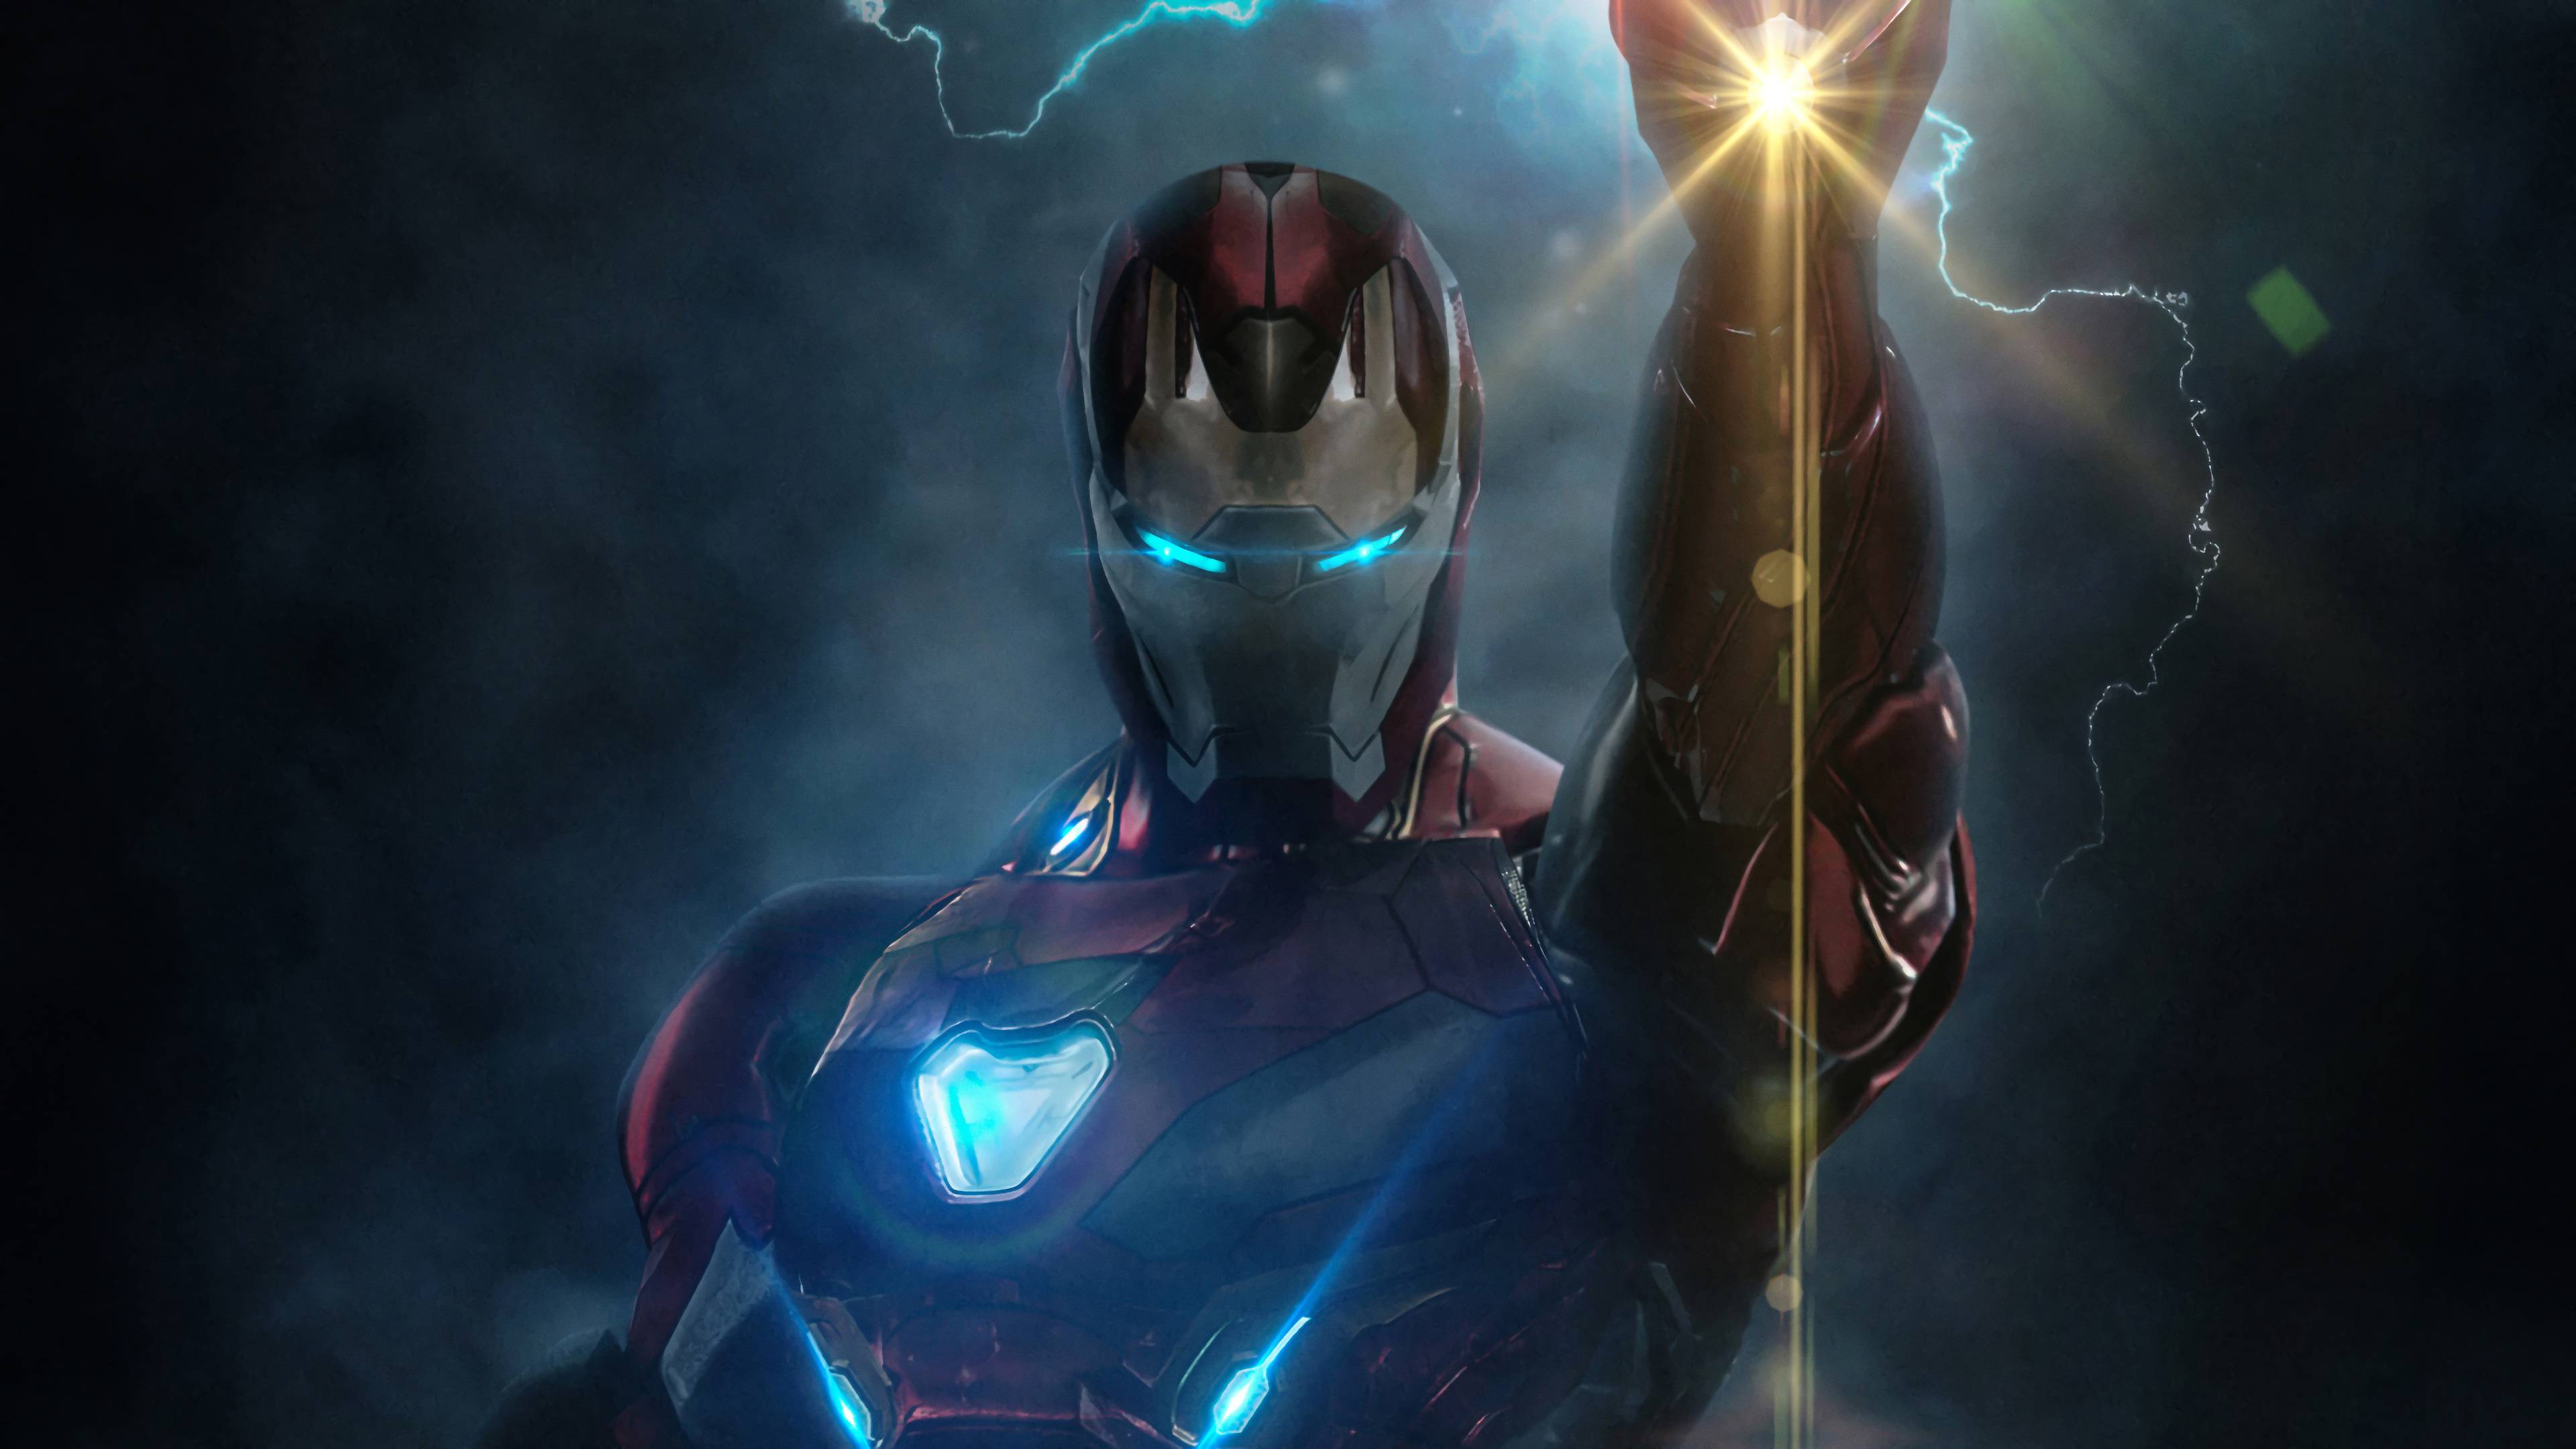 Iron Man Endgame 4k Wallpapers Top Free Iron Man Endgame 4k